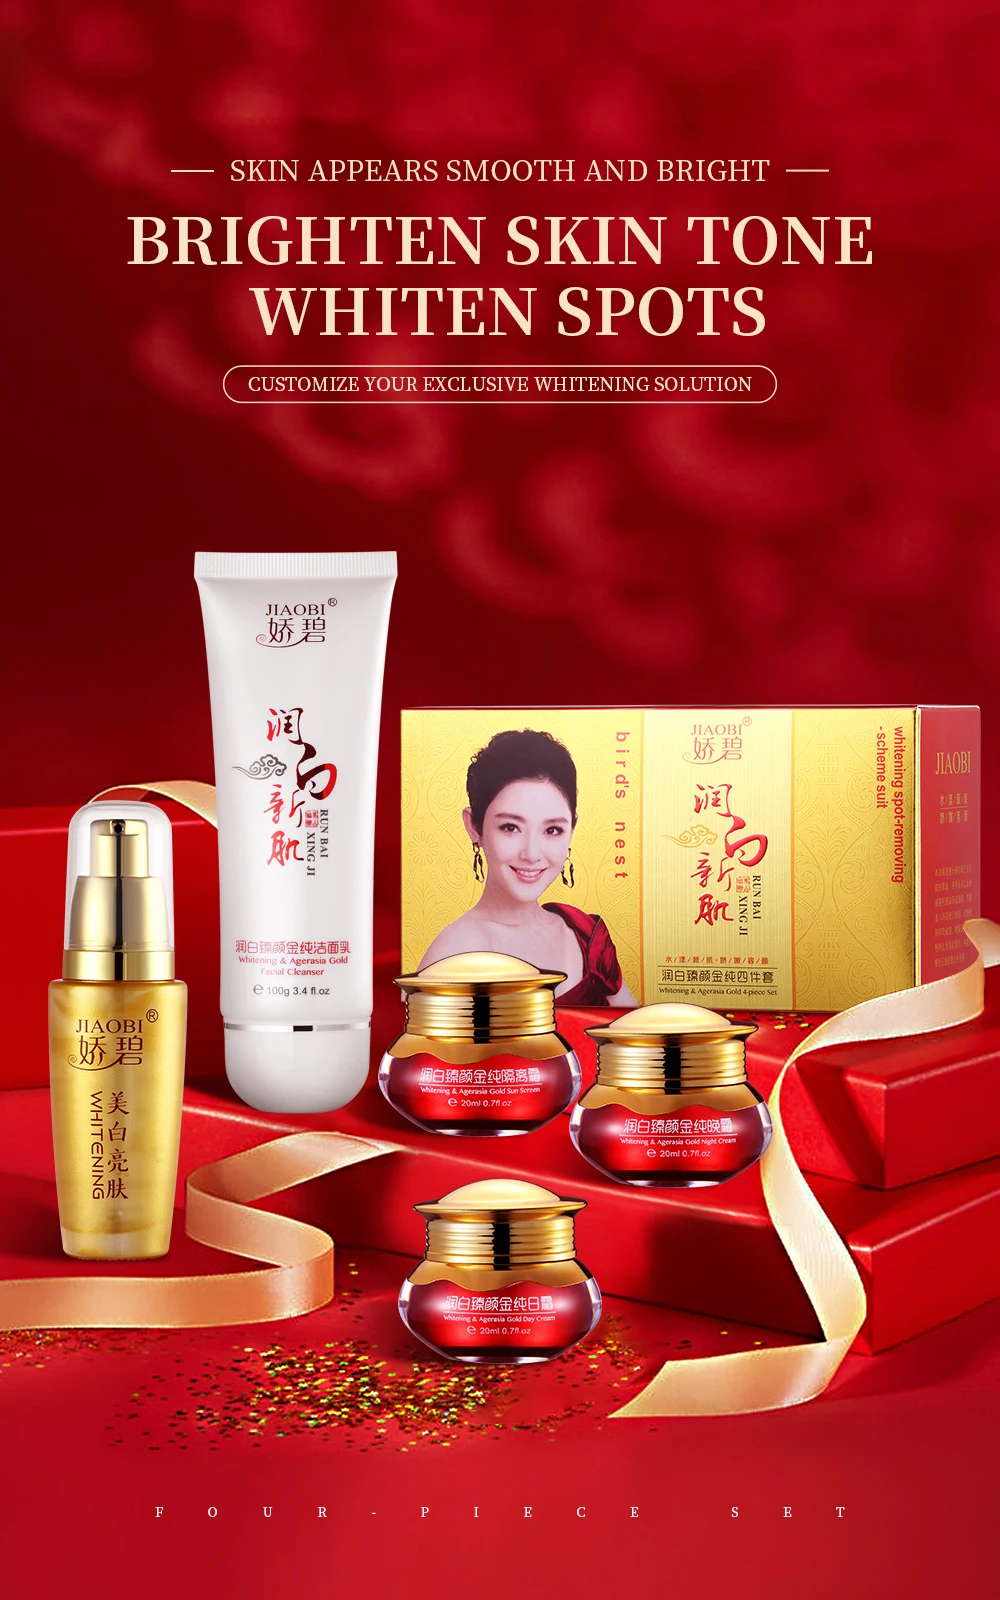 Jiaobi Skin Whitening China Cream Set Of 4